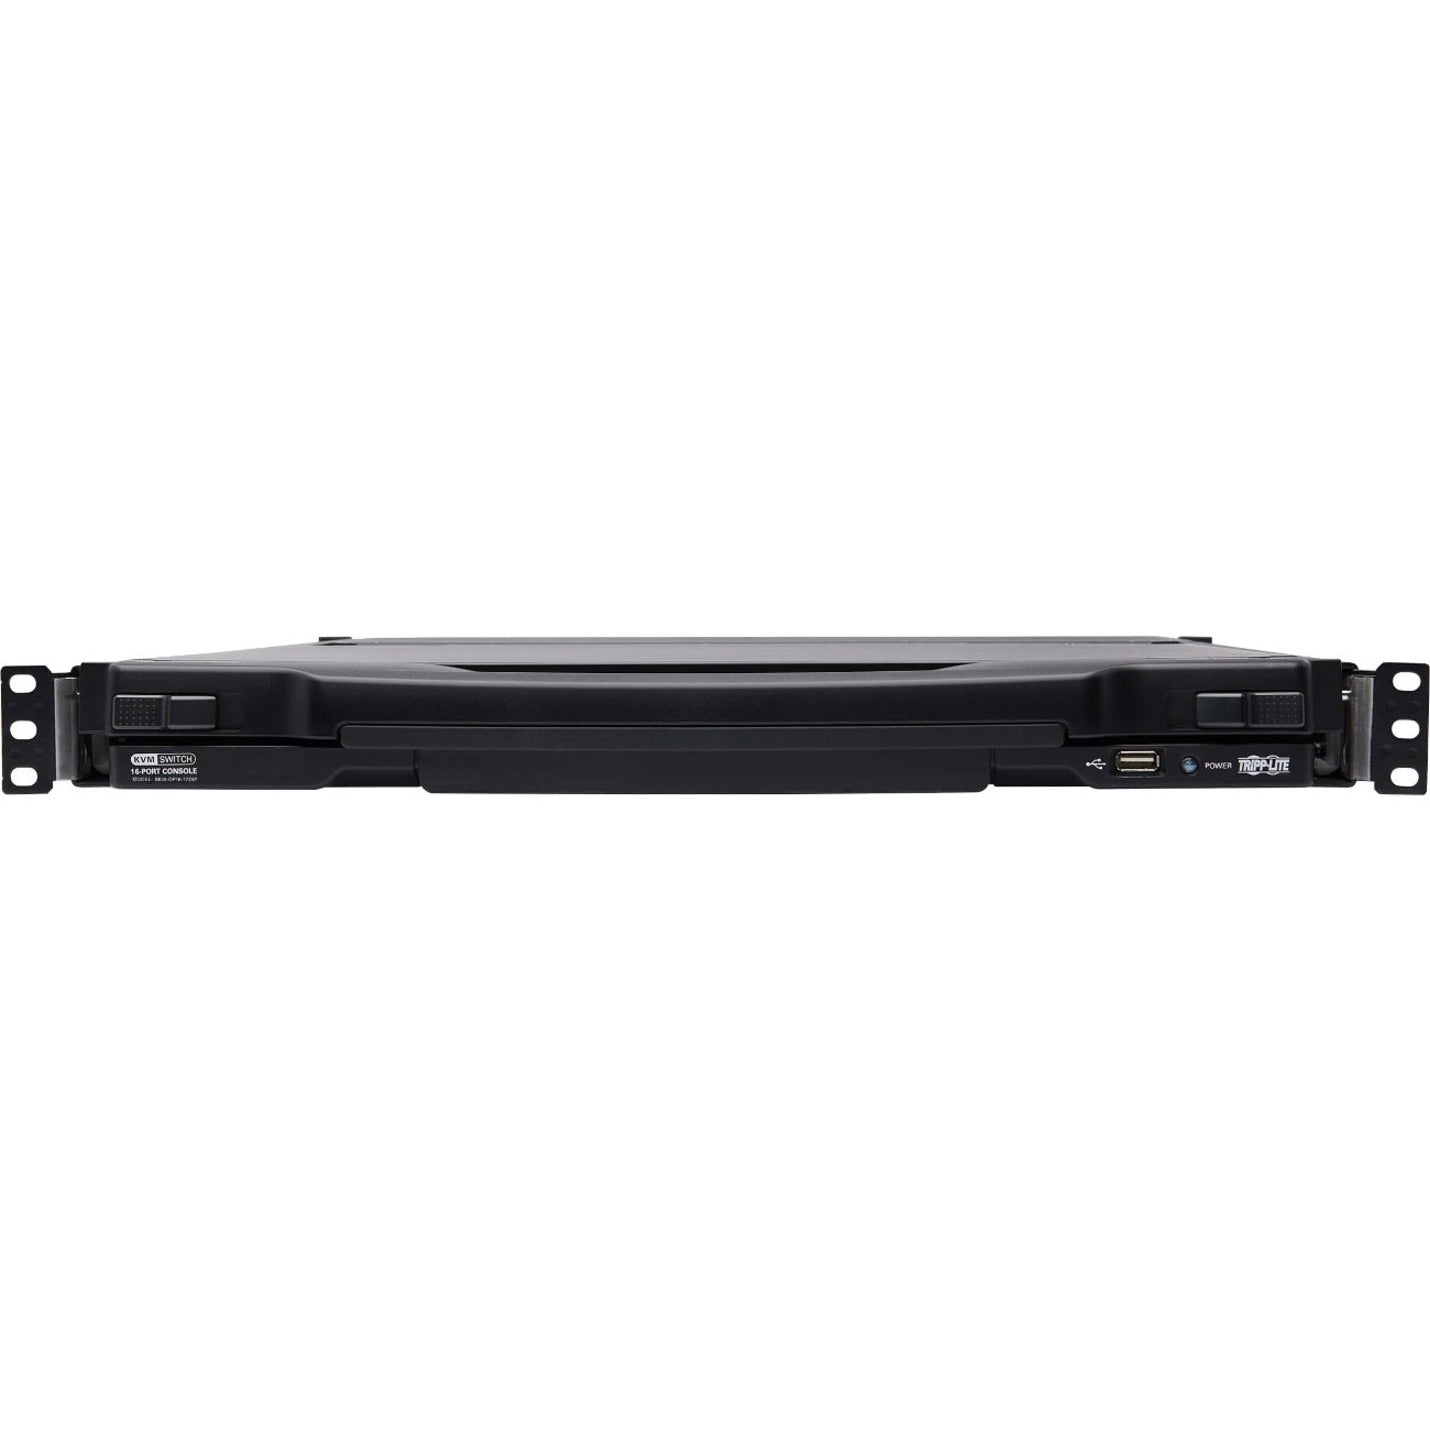 Tripp Lite B030-DP16-17DIP 16-Port DisplayPort KVM Switch Console, 17" LCD, Full HD, USB, Mac/PC/Linux Compatible